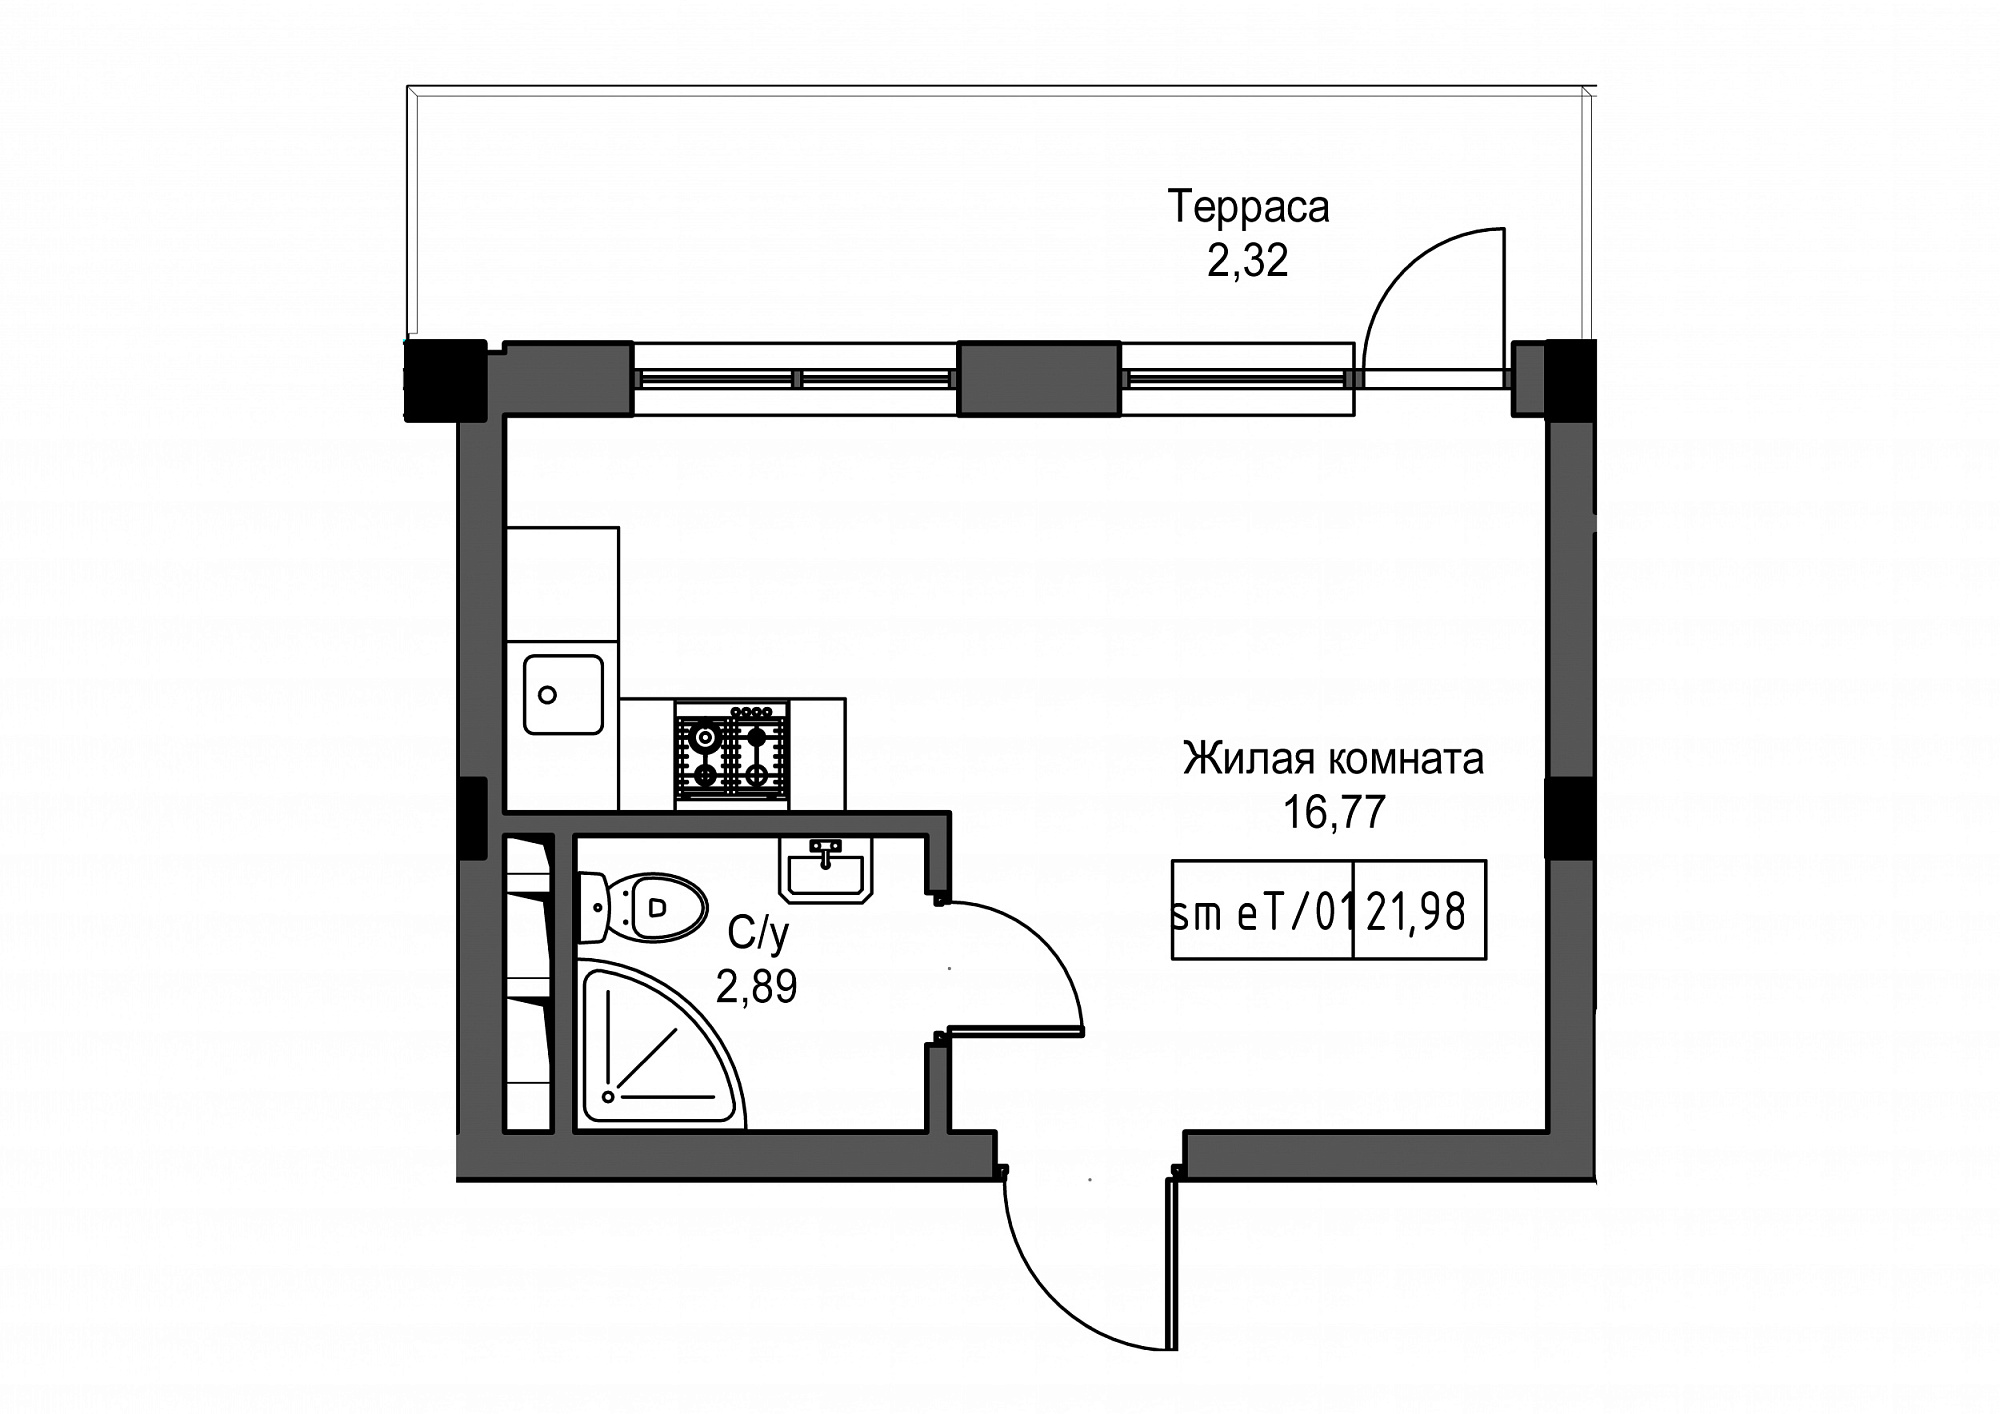 Планировка Smart-квартира площей 21.98м2, UM-002-02/0102.